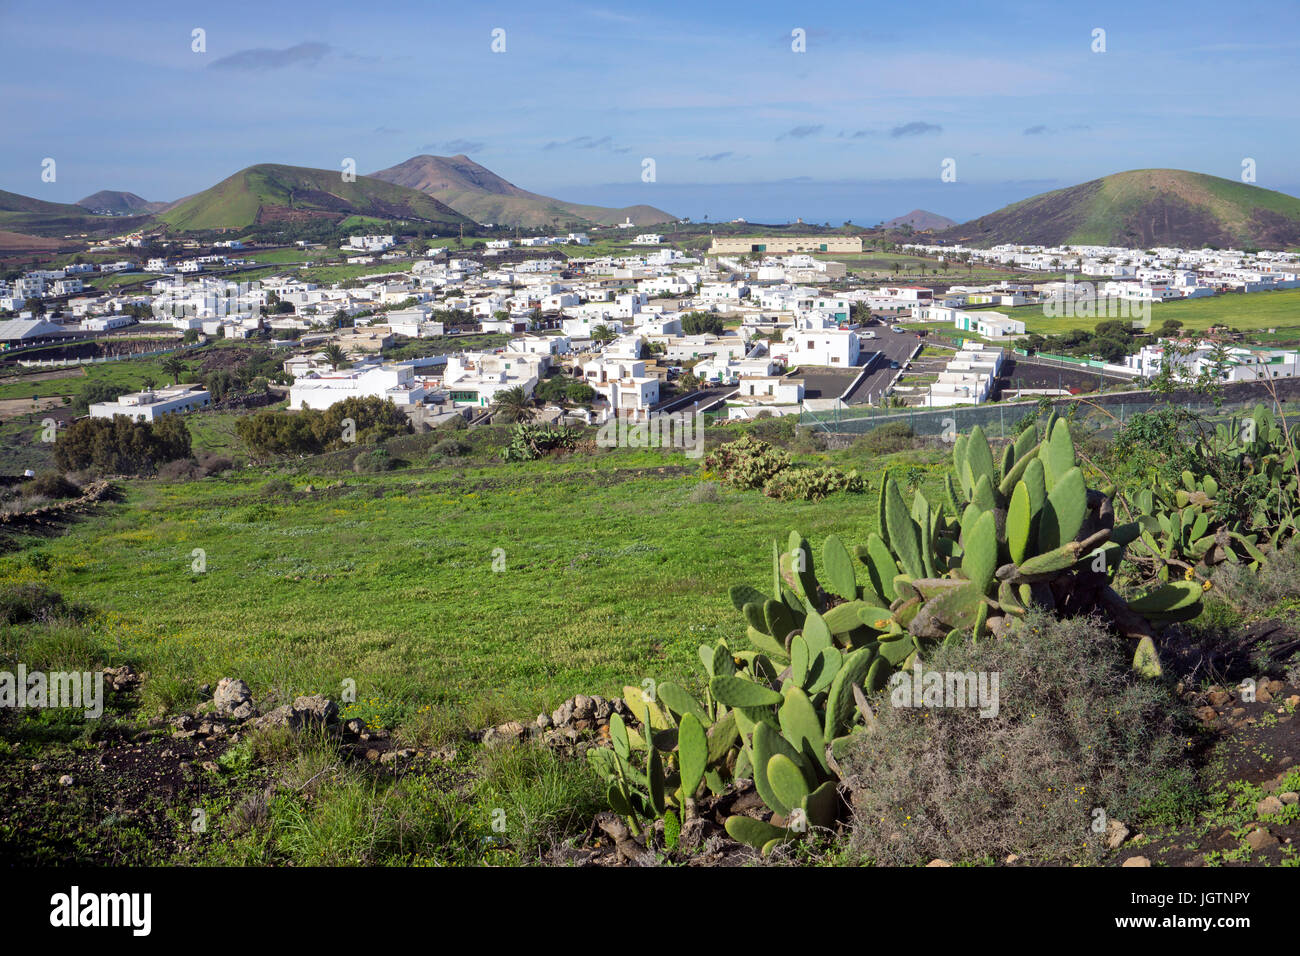 Typische cabnarian white cube Häuser im Dorf Uga, Insel Lanzarote, Kanarische Inseln, Spanien, Europa Stockfoto